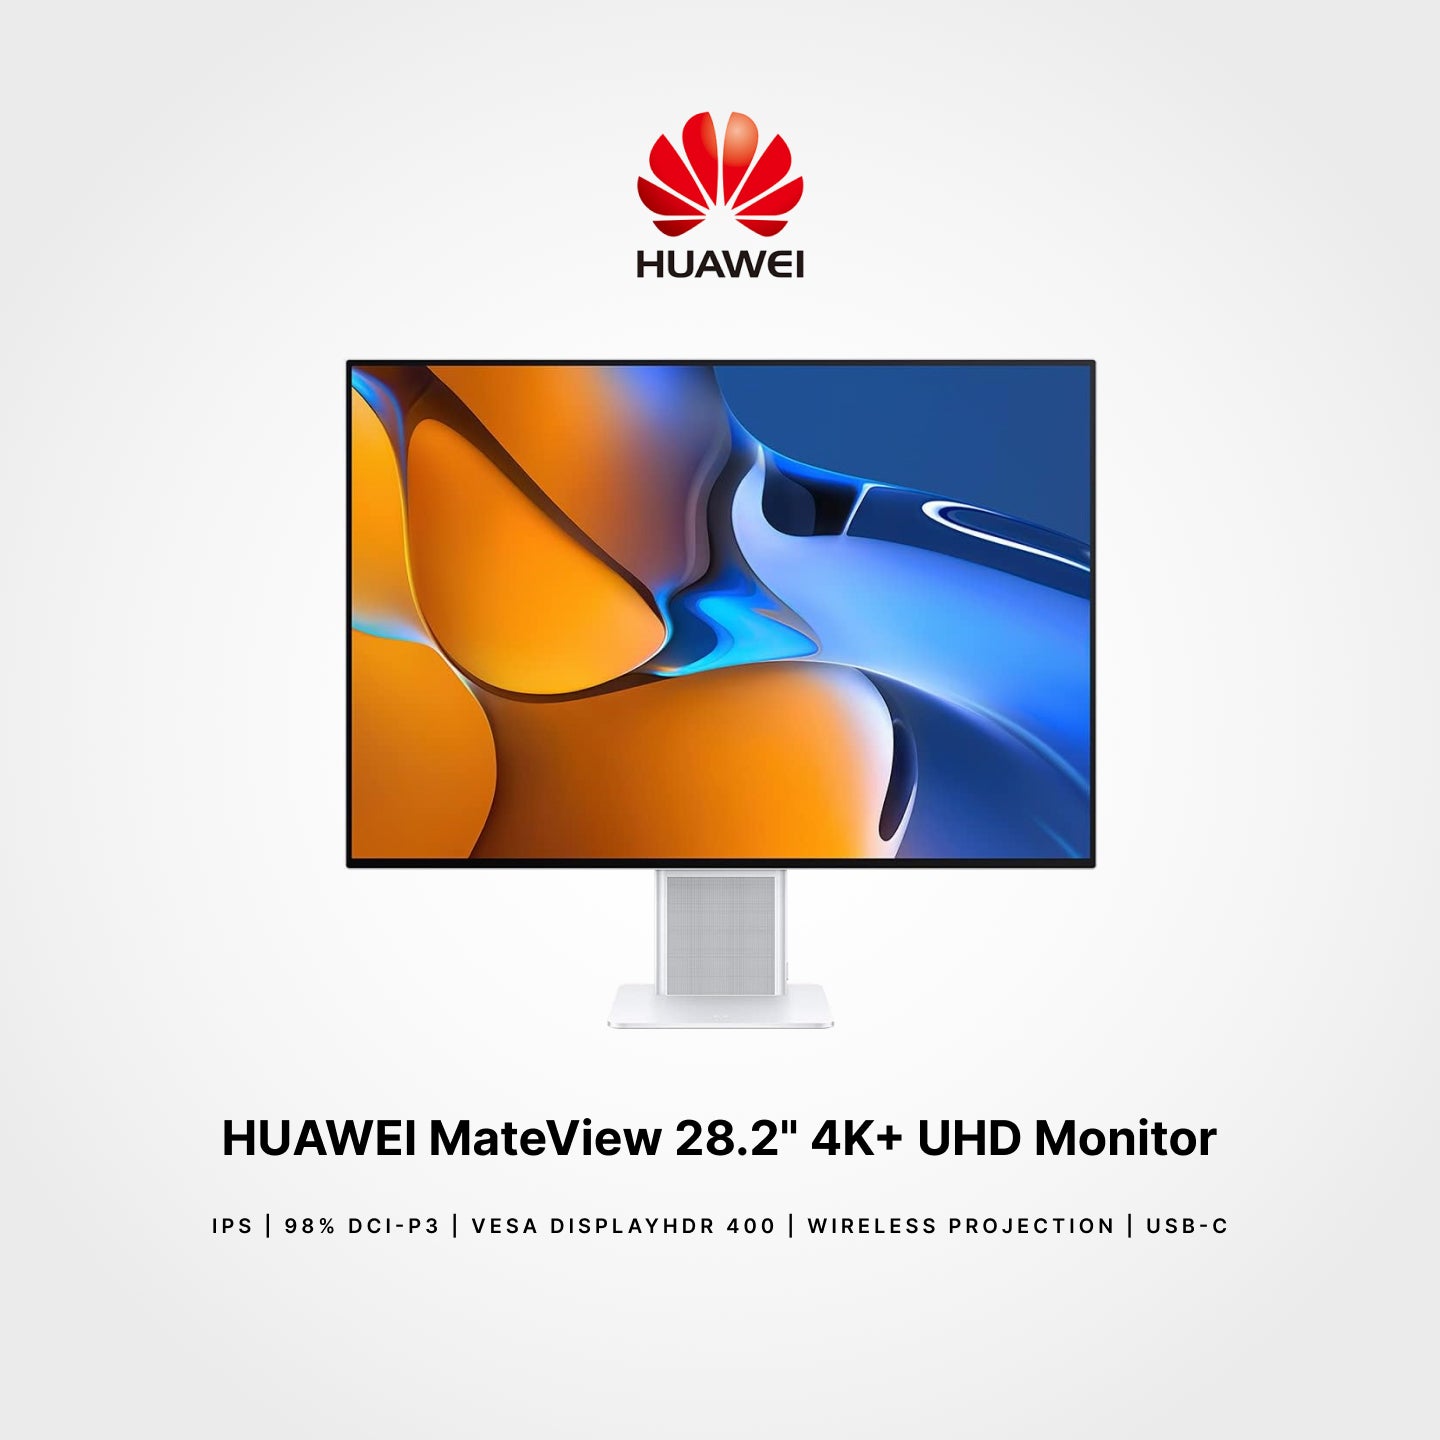 Huawei MateView 28.2